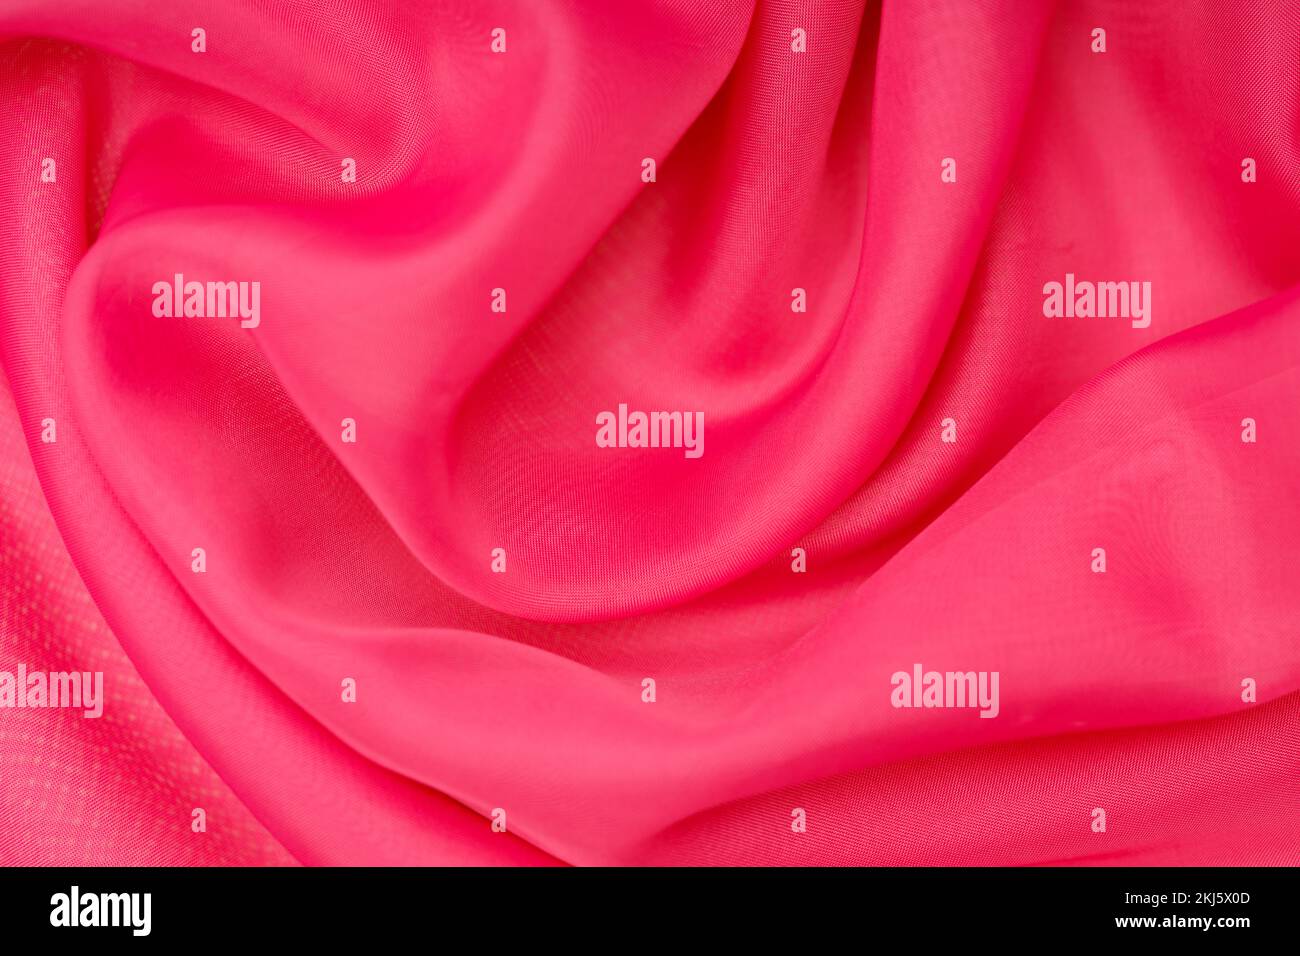 magnifique soie rose. tissu ondulé. Photo de haute qualité Banque D'Images